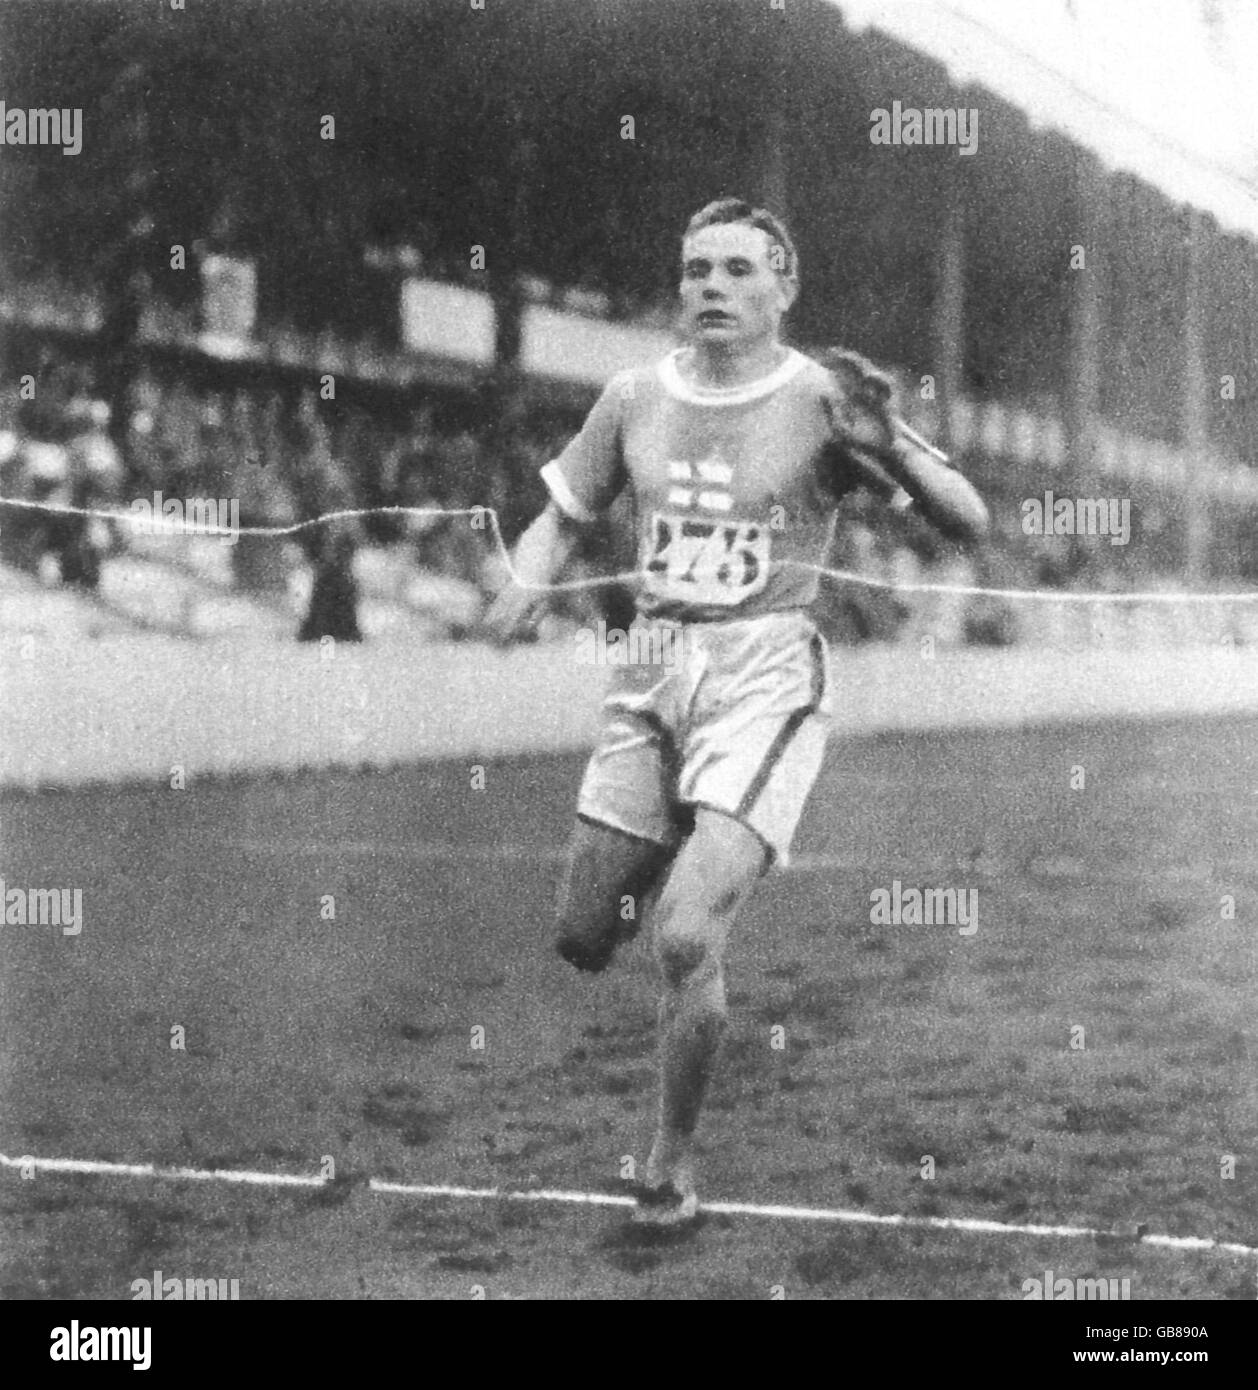 Atletica - Anversa Giochi Olimpici 1920 - Uomini Cross Country Foto Stock